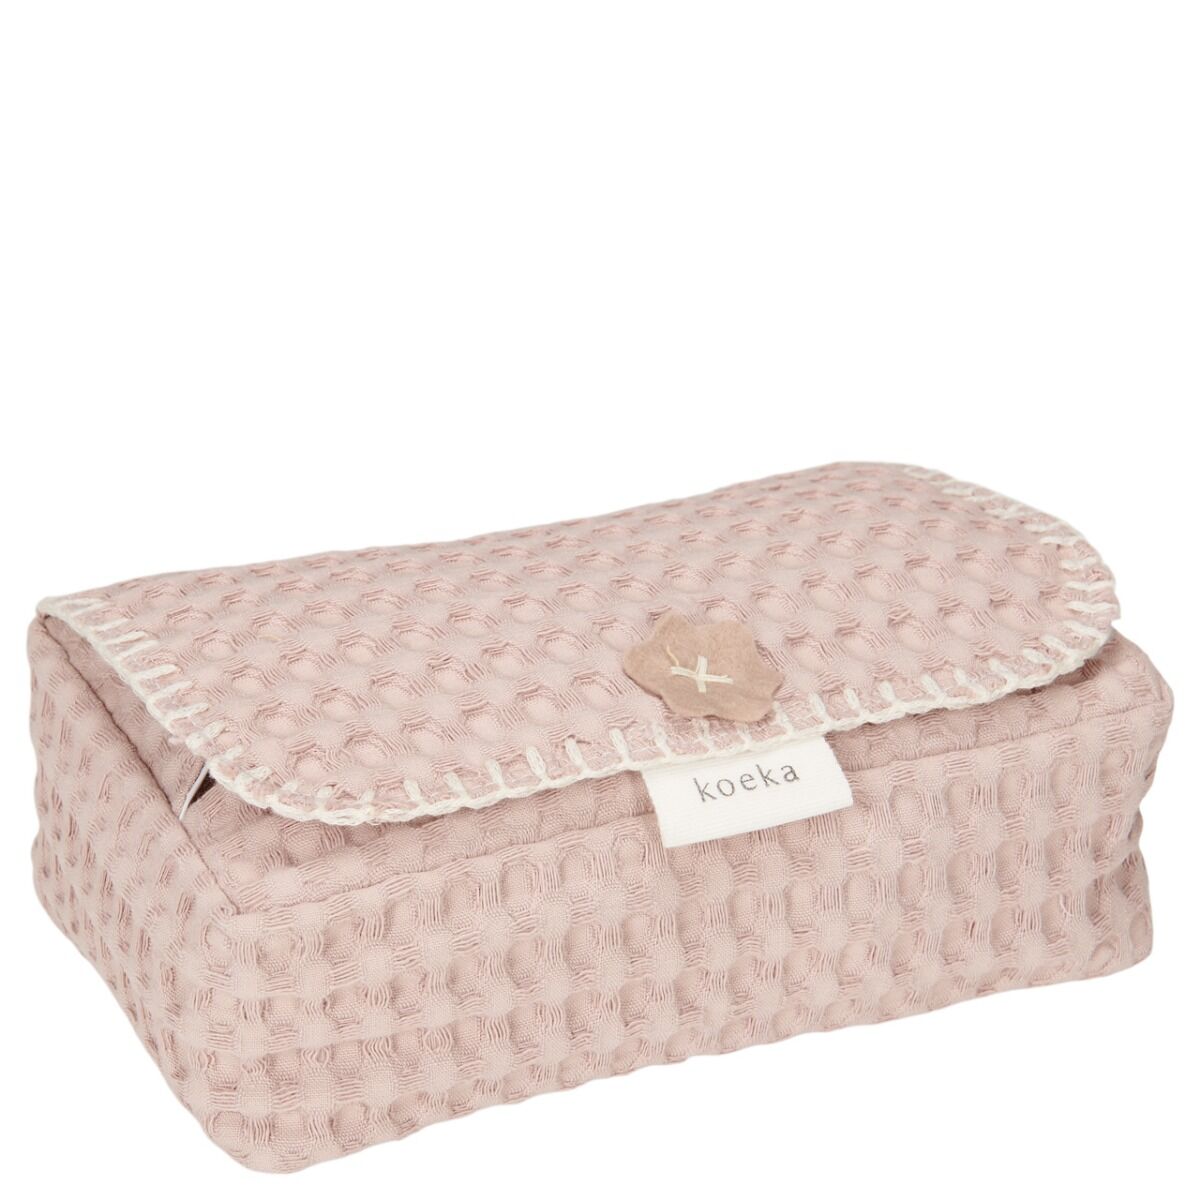 Koeka Hoes Voor Babydoekjes Wafel Antwerp Grey Pink online kopen